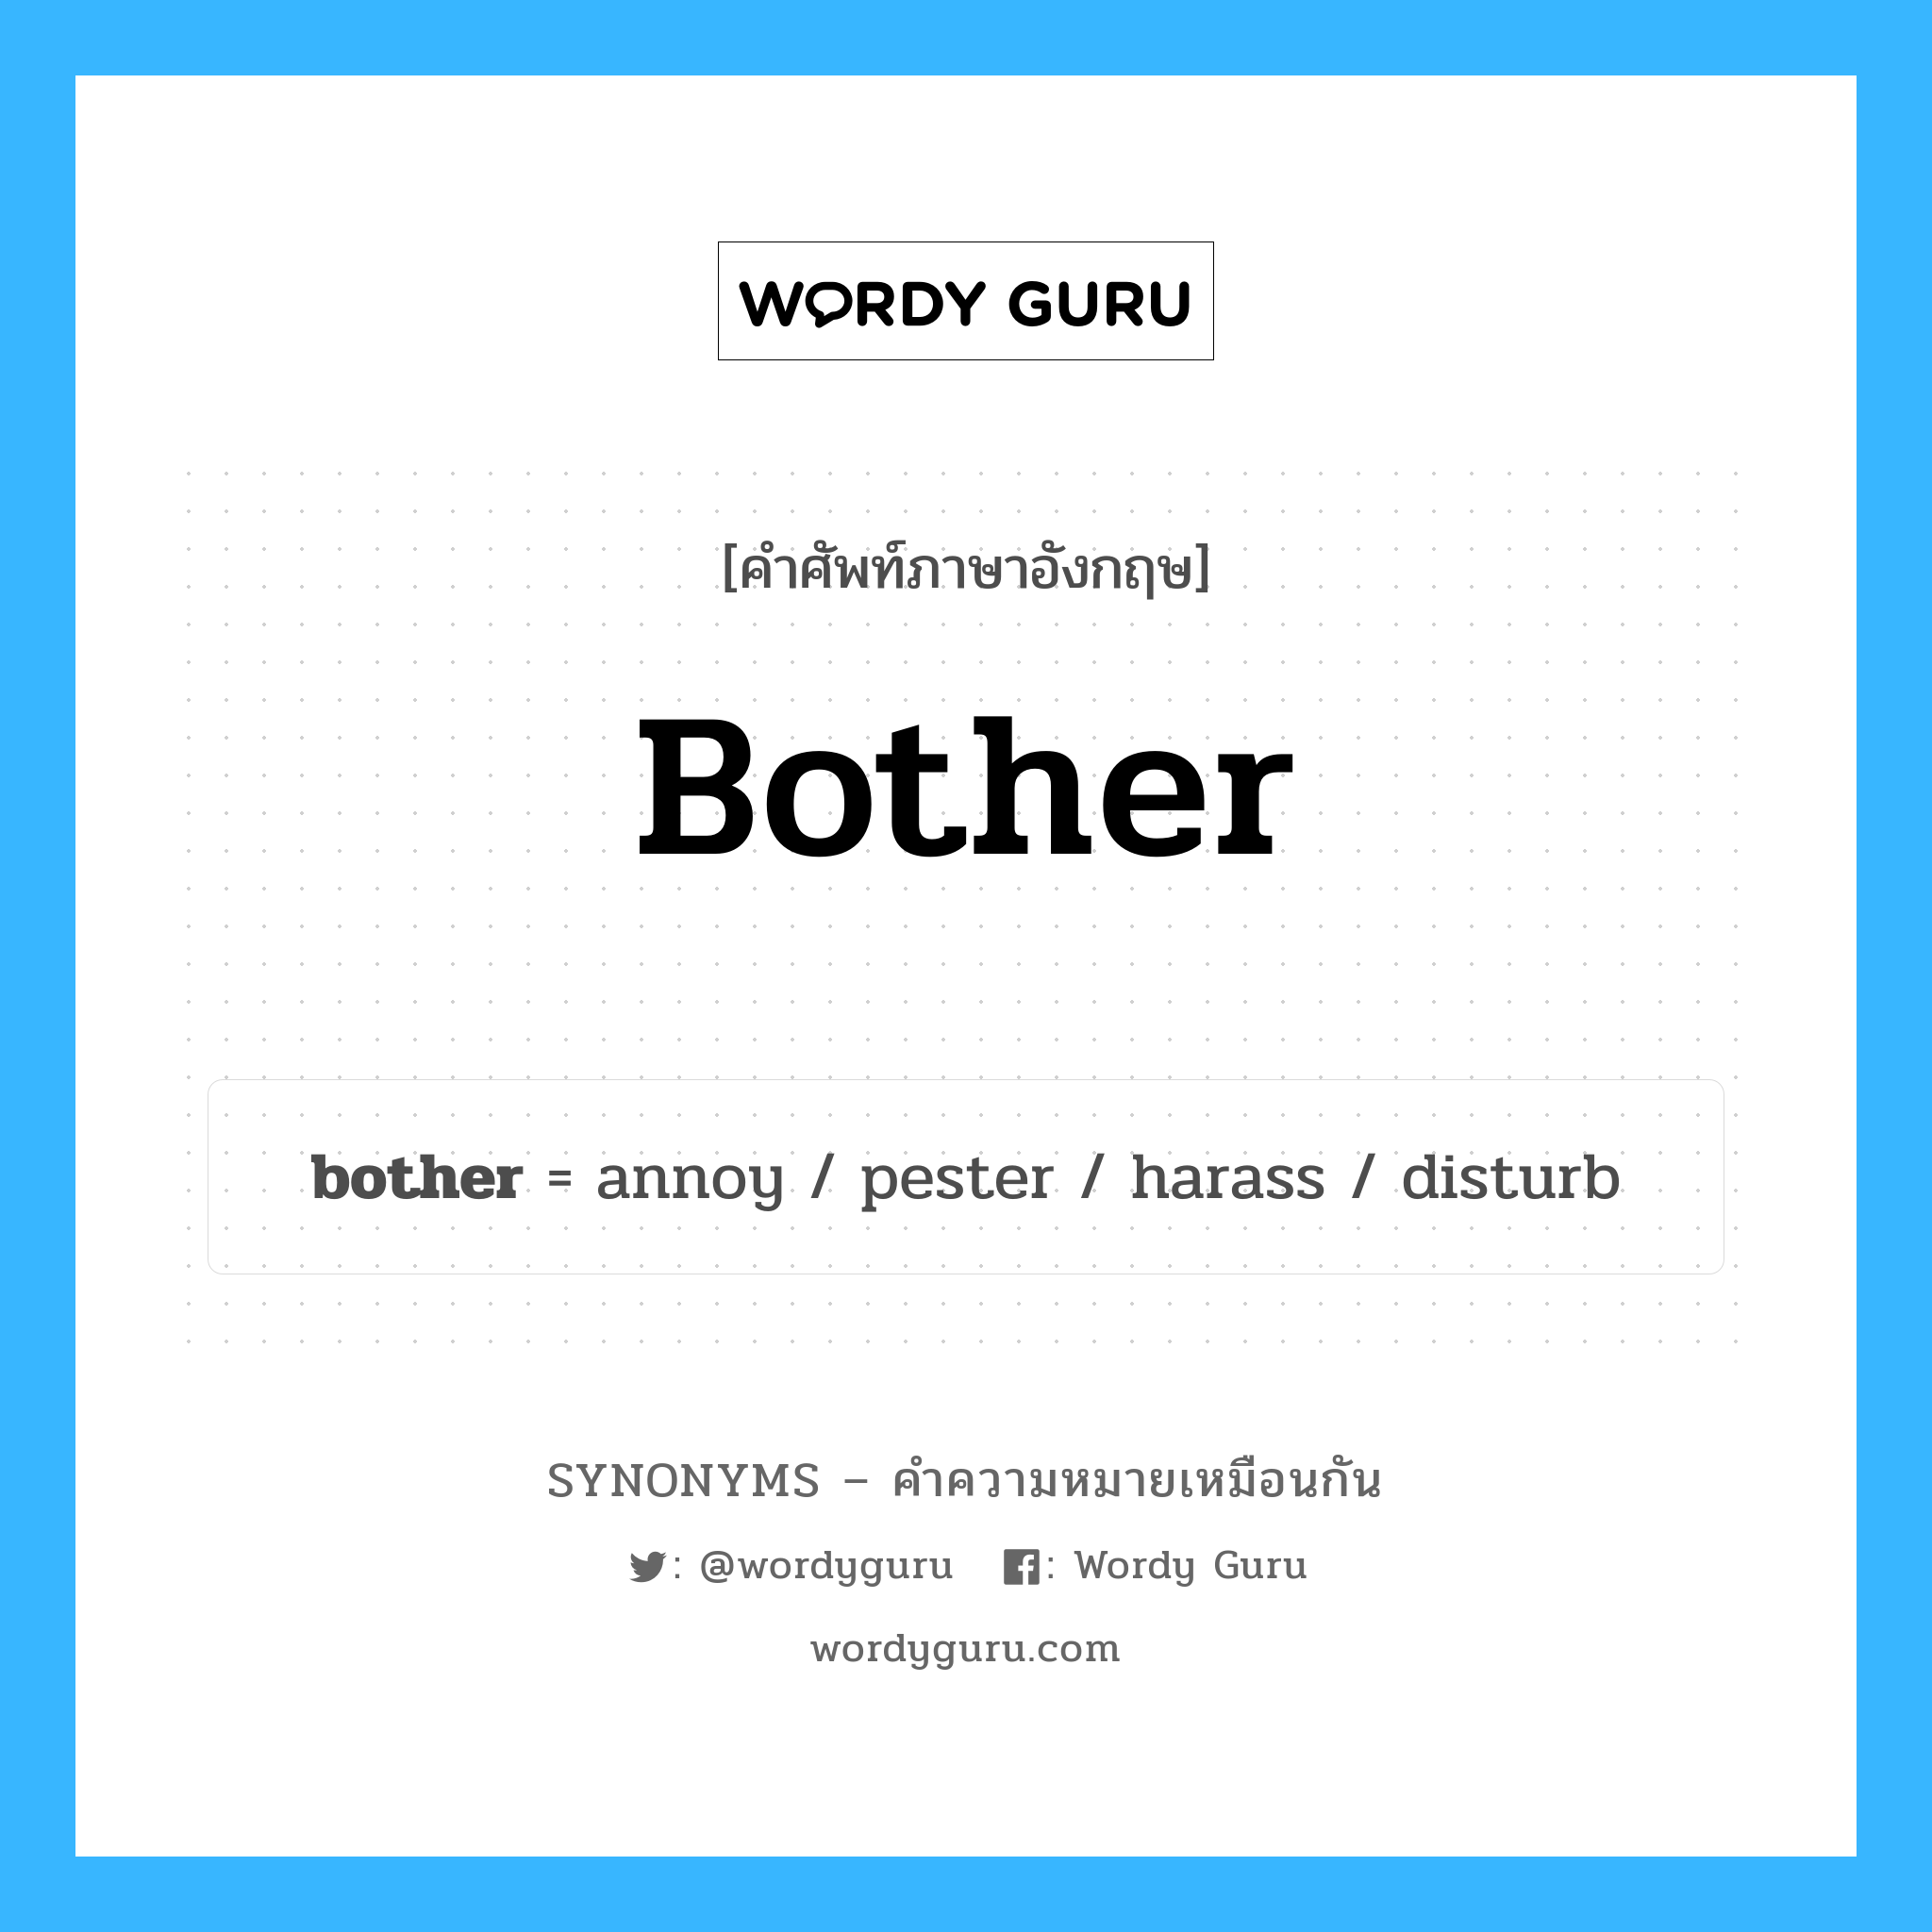 disturb เป็นหนึ่งใน bother และมีคำอื่น ๆ อีกดังนี้, คำศัพท์ภาษาอังกฤษ disturb ความหมายคล้ายกันกับ bother แปลว่า รบกวน หมวด bother